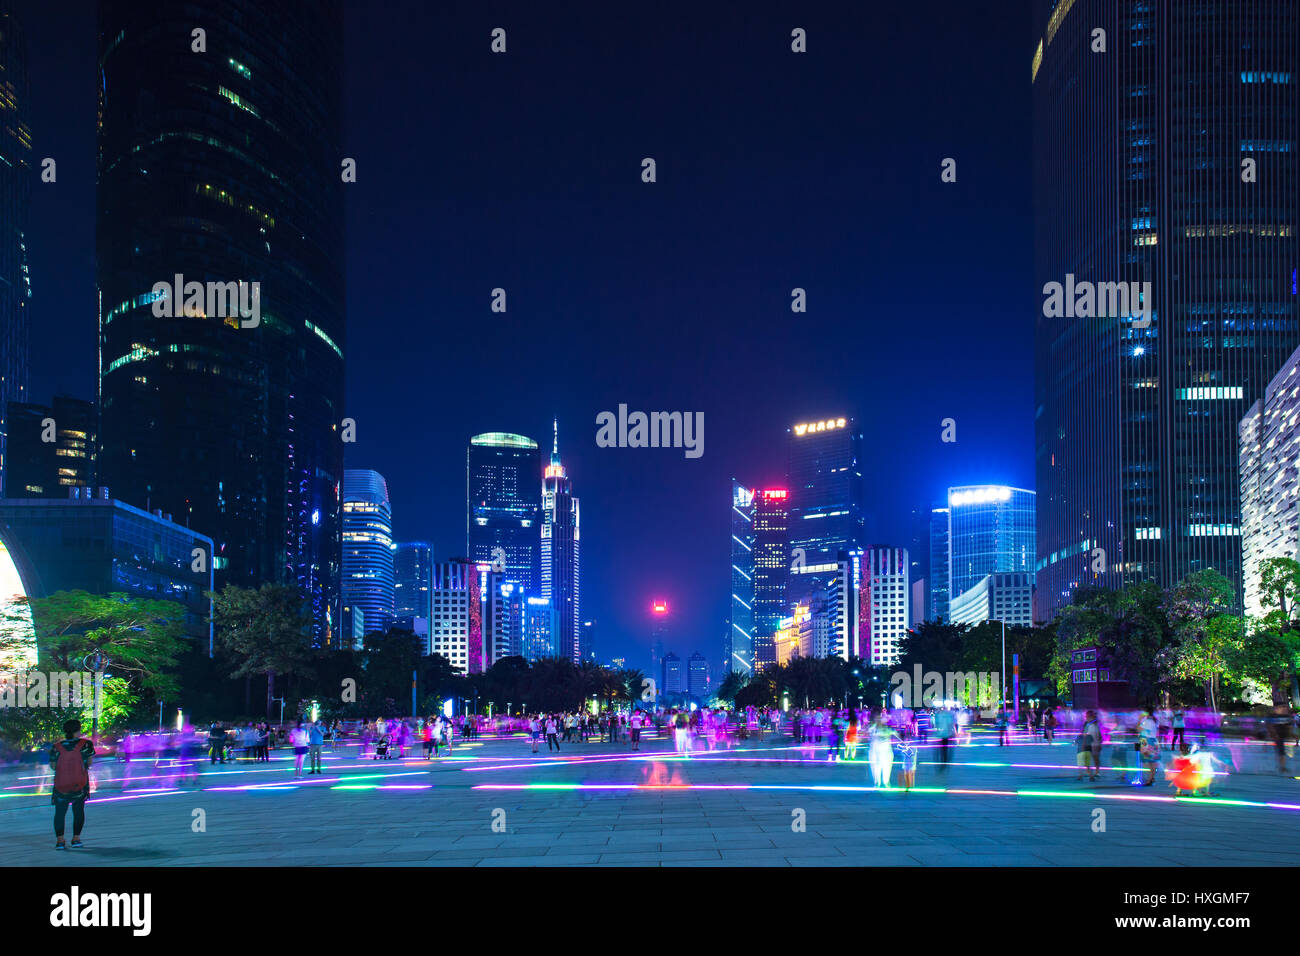 Guangzhou, Chine - 4 octobre 2016 : Crépuscule sur la place aux fleurs et les gratte-ciel modernes dans le centre-ville de Guangzhou, Chine, le 4 Octover, 2016. Banque D'Images